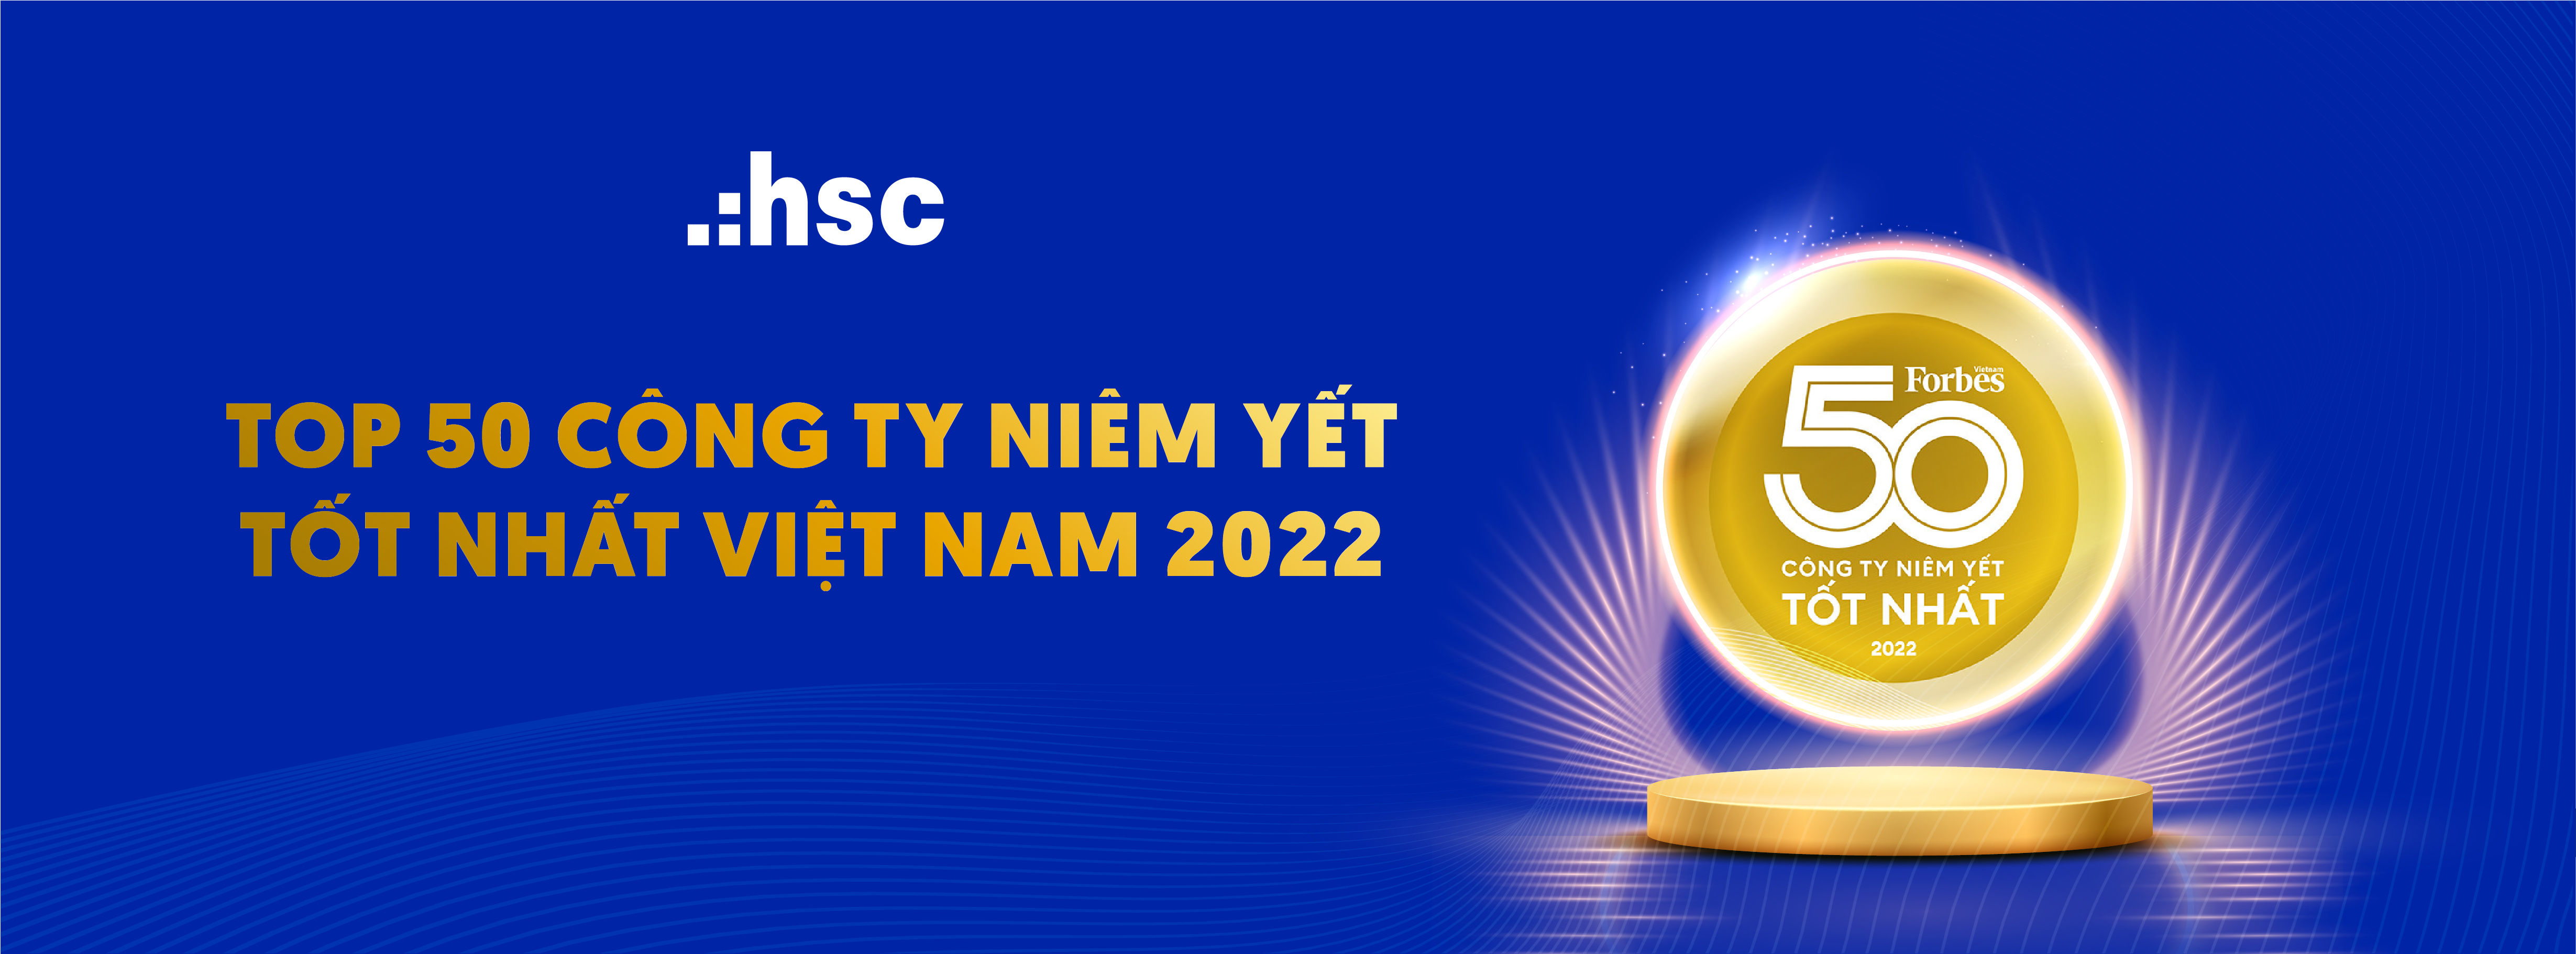 HSC - Top 50 công ty niêm yết tốt nhất Việt Nam năm 2022